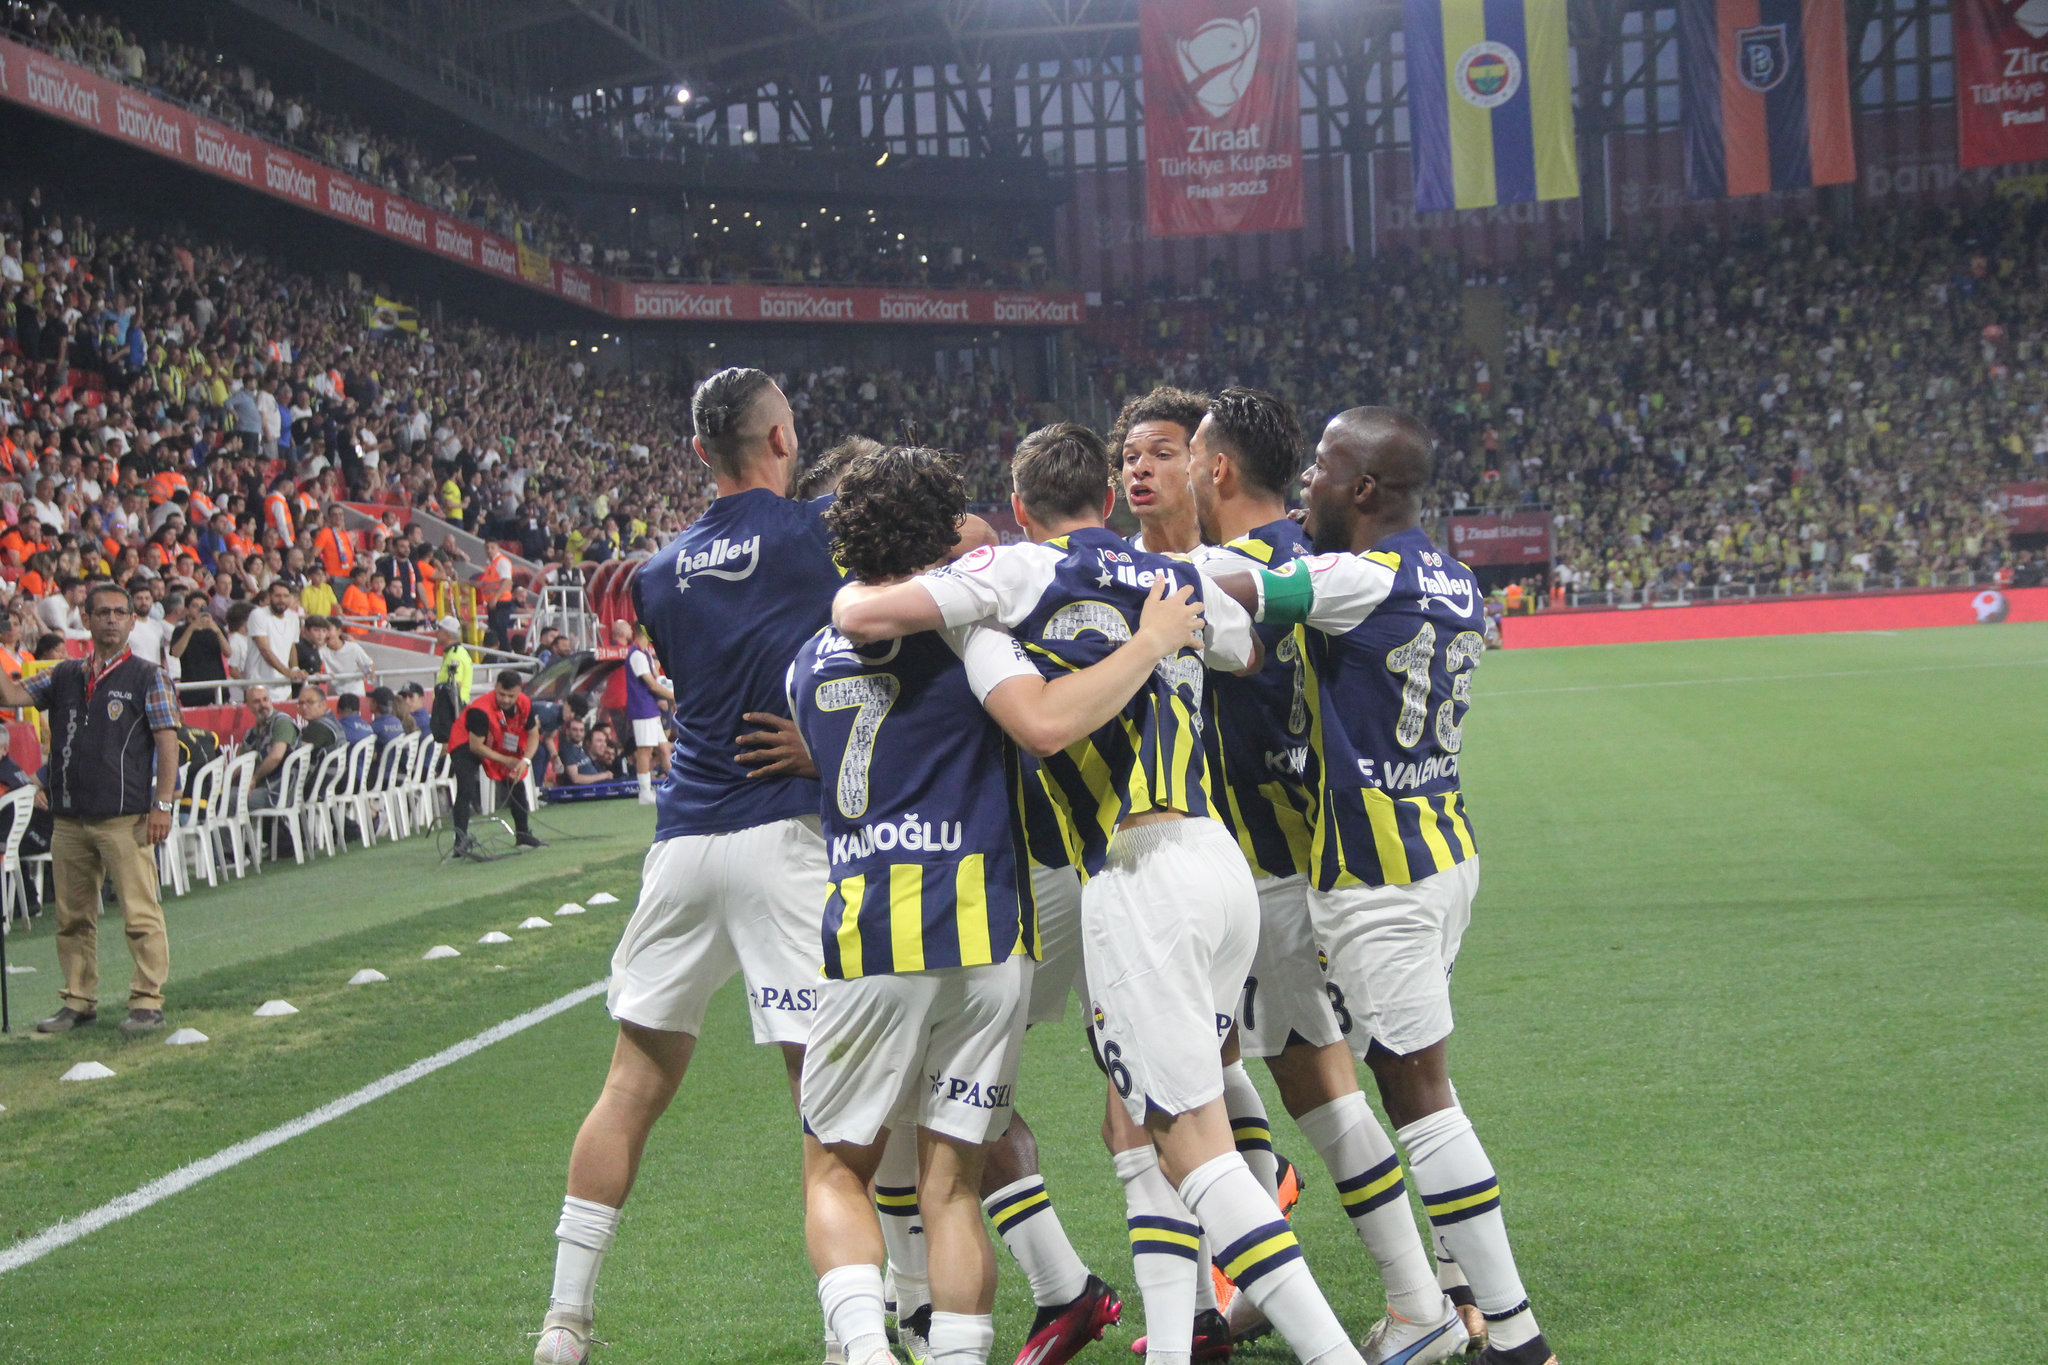 TRANSFER HABERİ: Fenerbahçe’den 2 yıldız için İtalya’ya çıkarma! Herkes Dzeko derken...